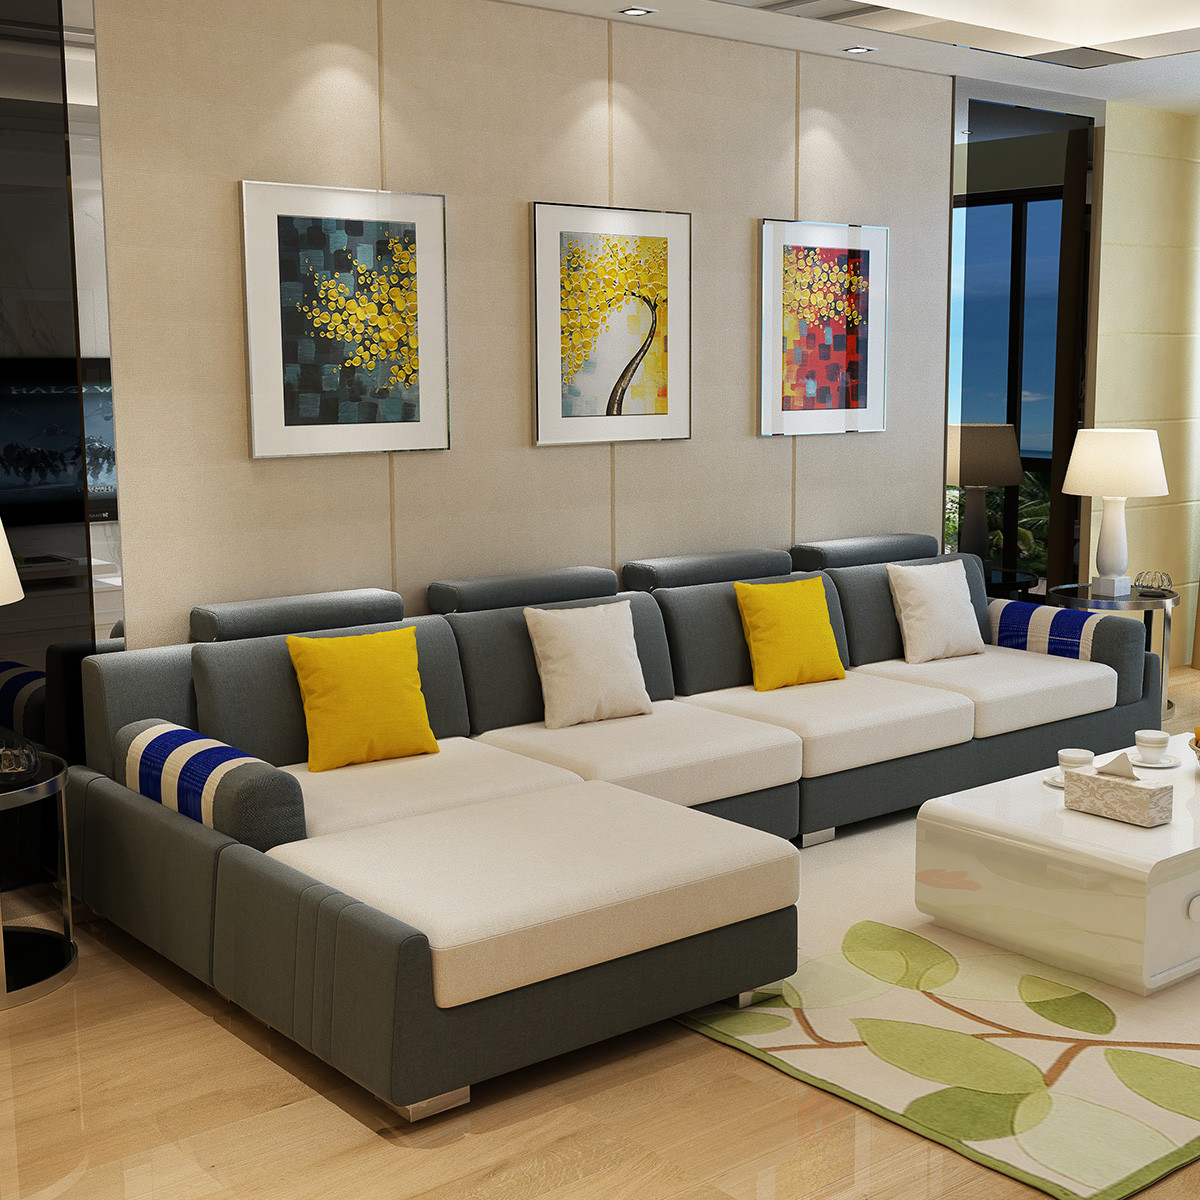 百丽安特 沙发 现代简约布艺沙发北欧小户型布沙发可拆洗客厅家具组合